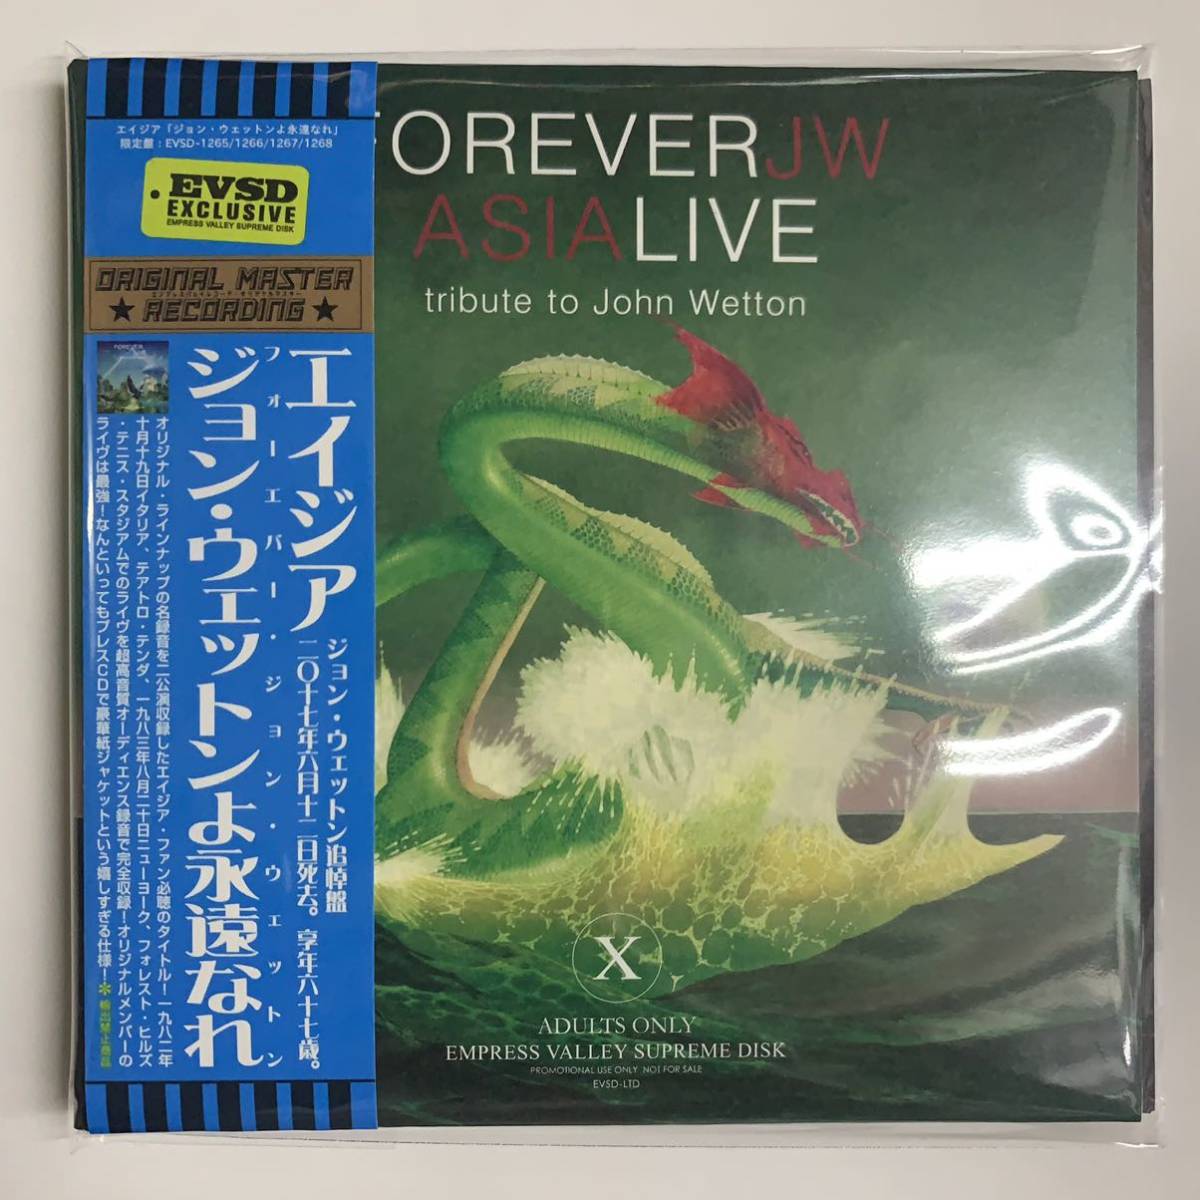 ASIA : FOREVER JW Asia Live「ジョン・ウェットンよ永遠なれ」 4CD set Empress Valley 異なるデザインで再登場です！！マスト！！の画像1